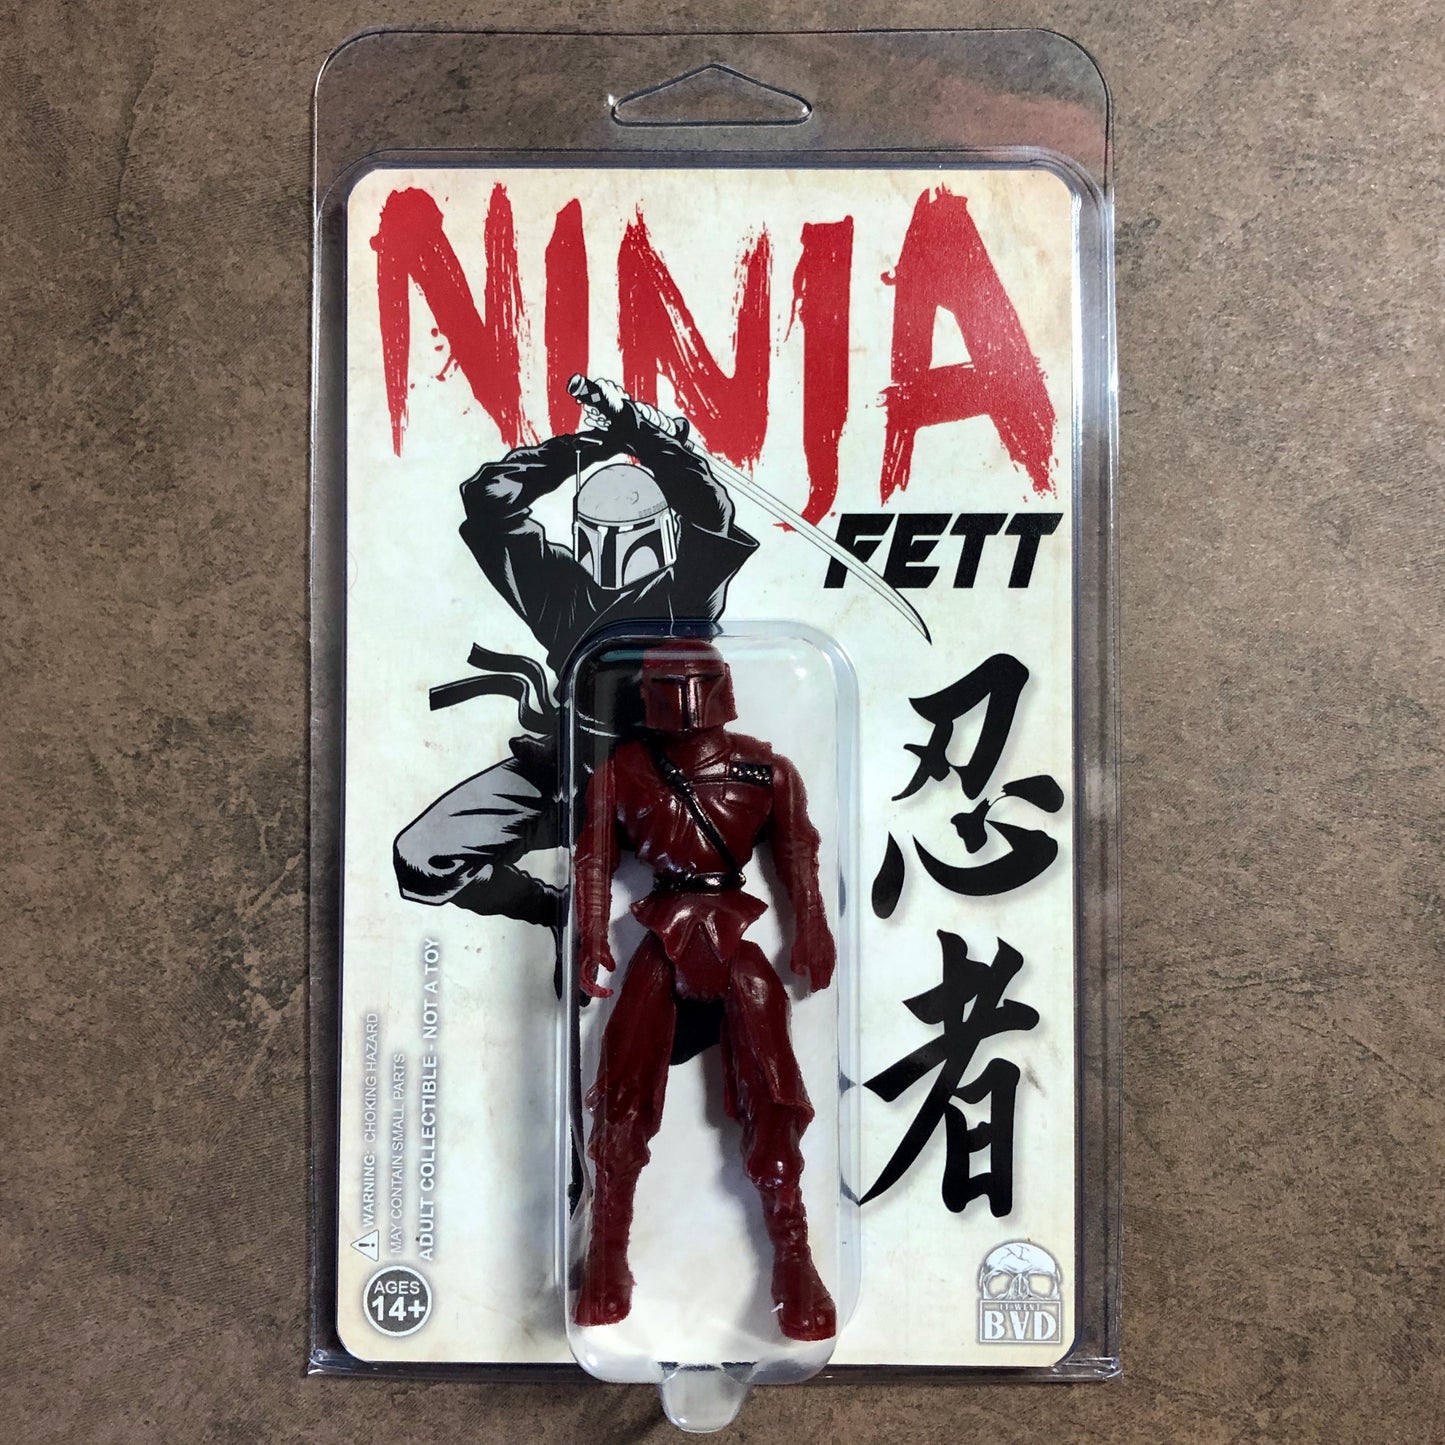 Ninja Fett Action Figure